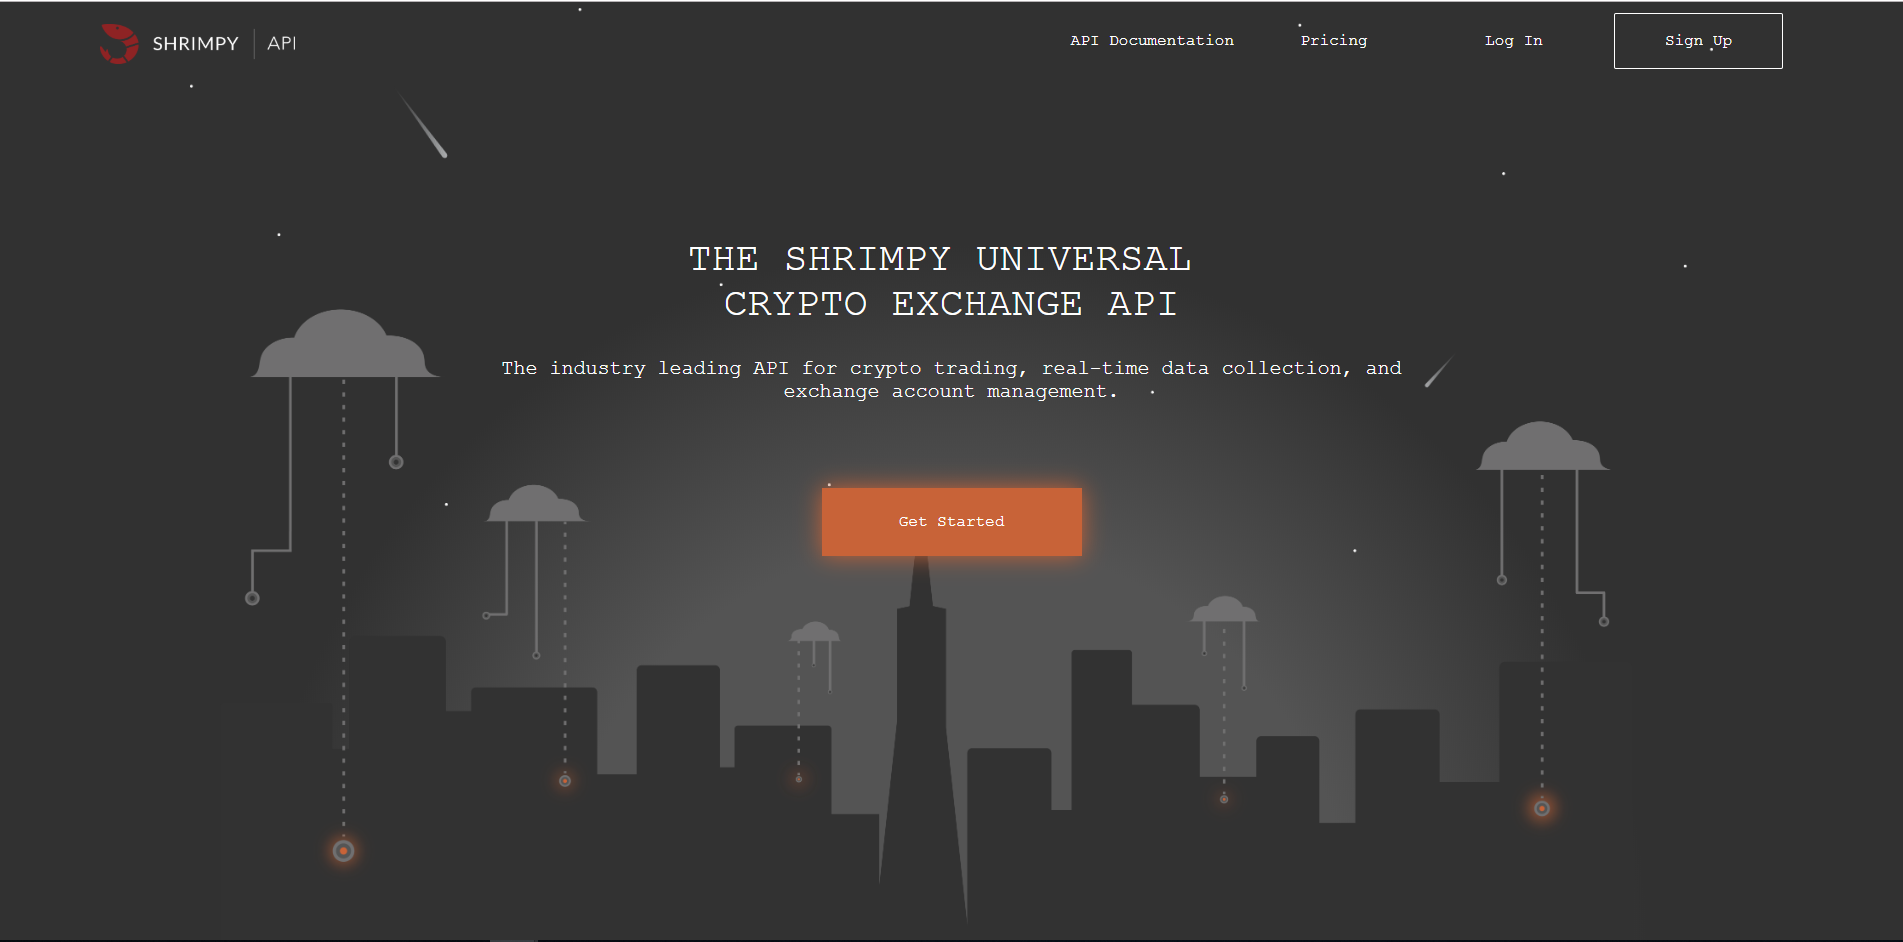 Universal cryptocurrency exchange 0.15 btc satishshi